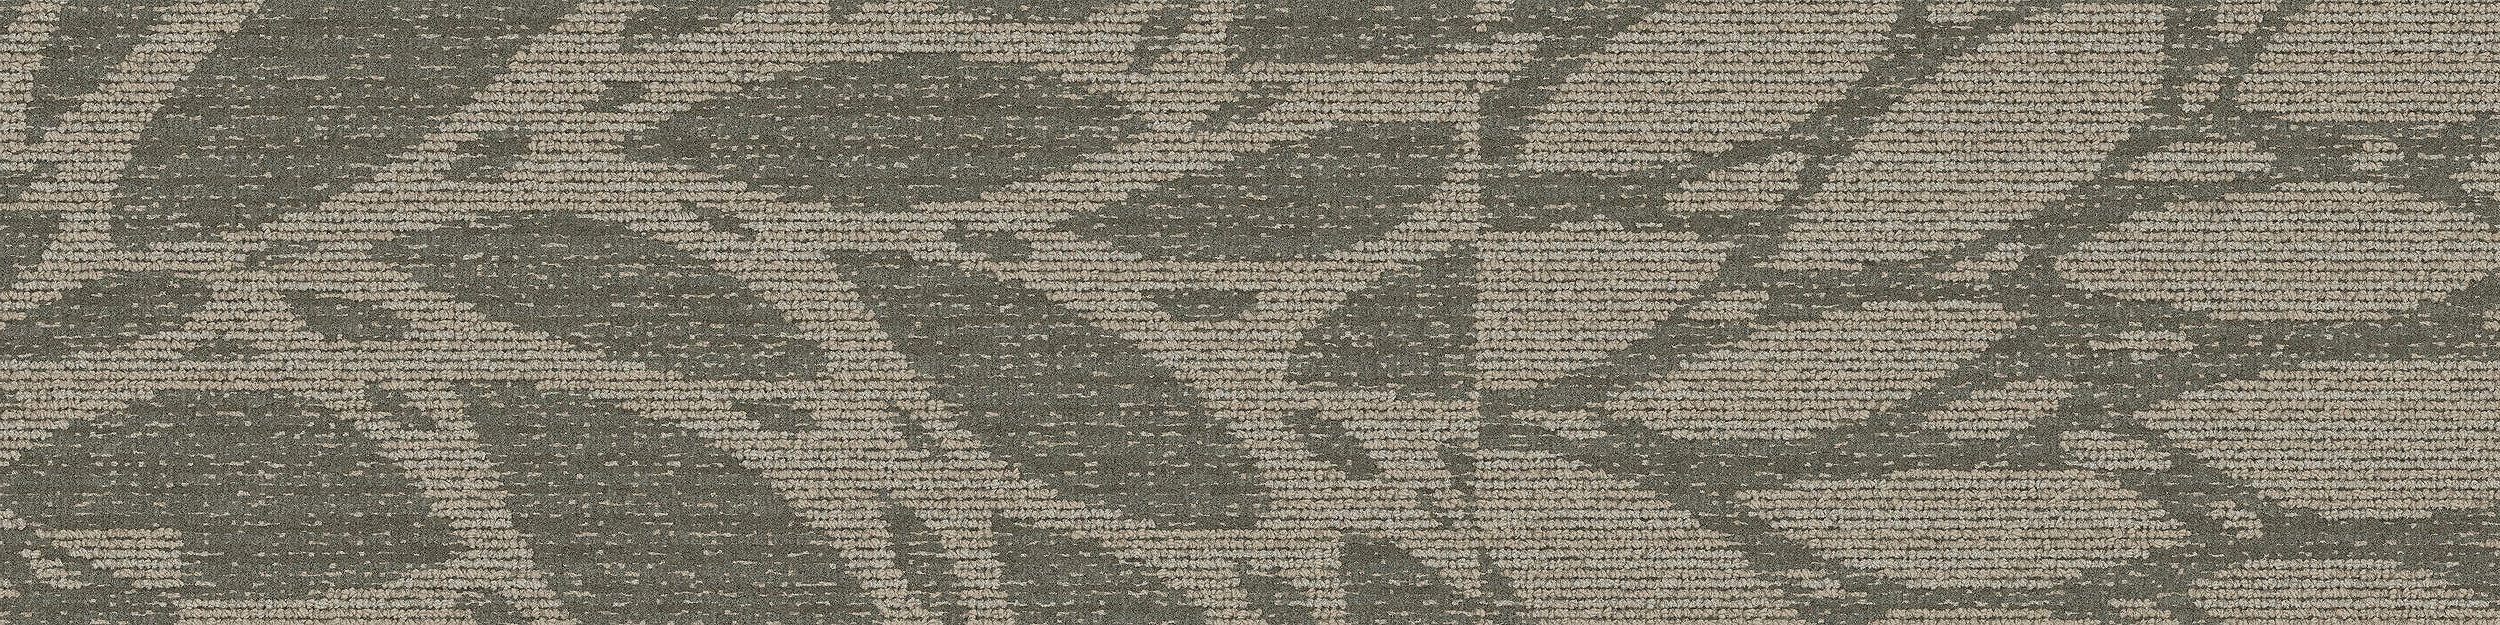 GN157 Carpet Tile In Pewter imagen número 3